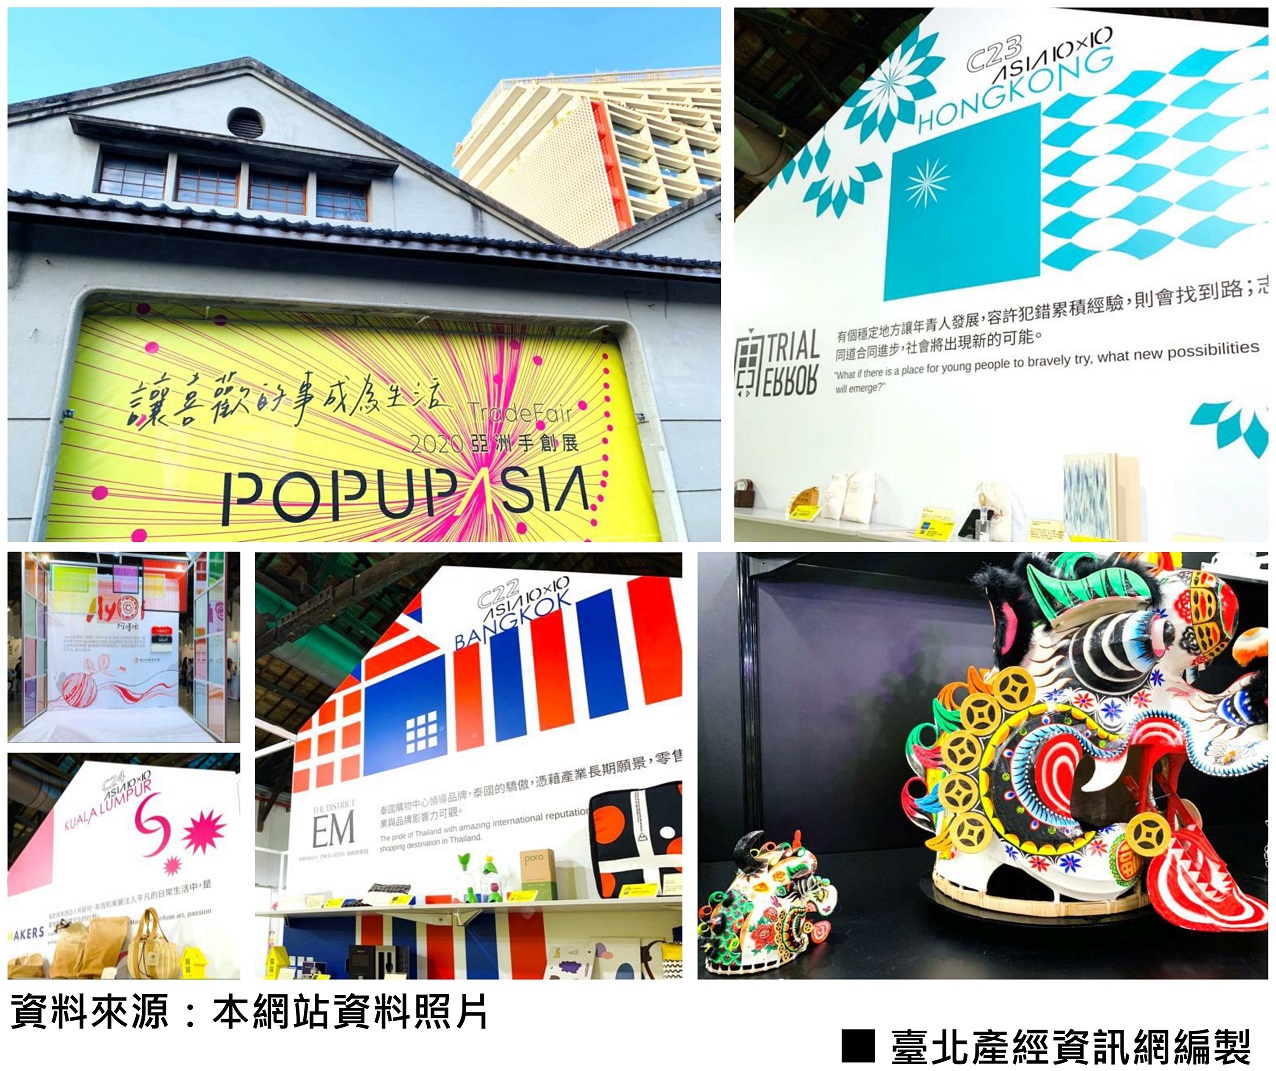 「2020 POP UP ASIA亞洲手創展」累積串聯超過1,000個手創品牌與平台，並展出珍貴香港非物質文化「紮作麒麟」及在地文化產物